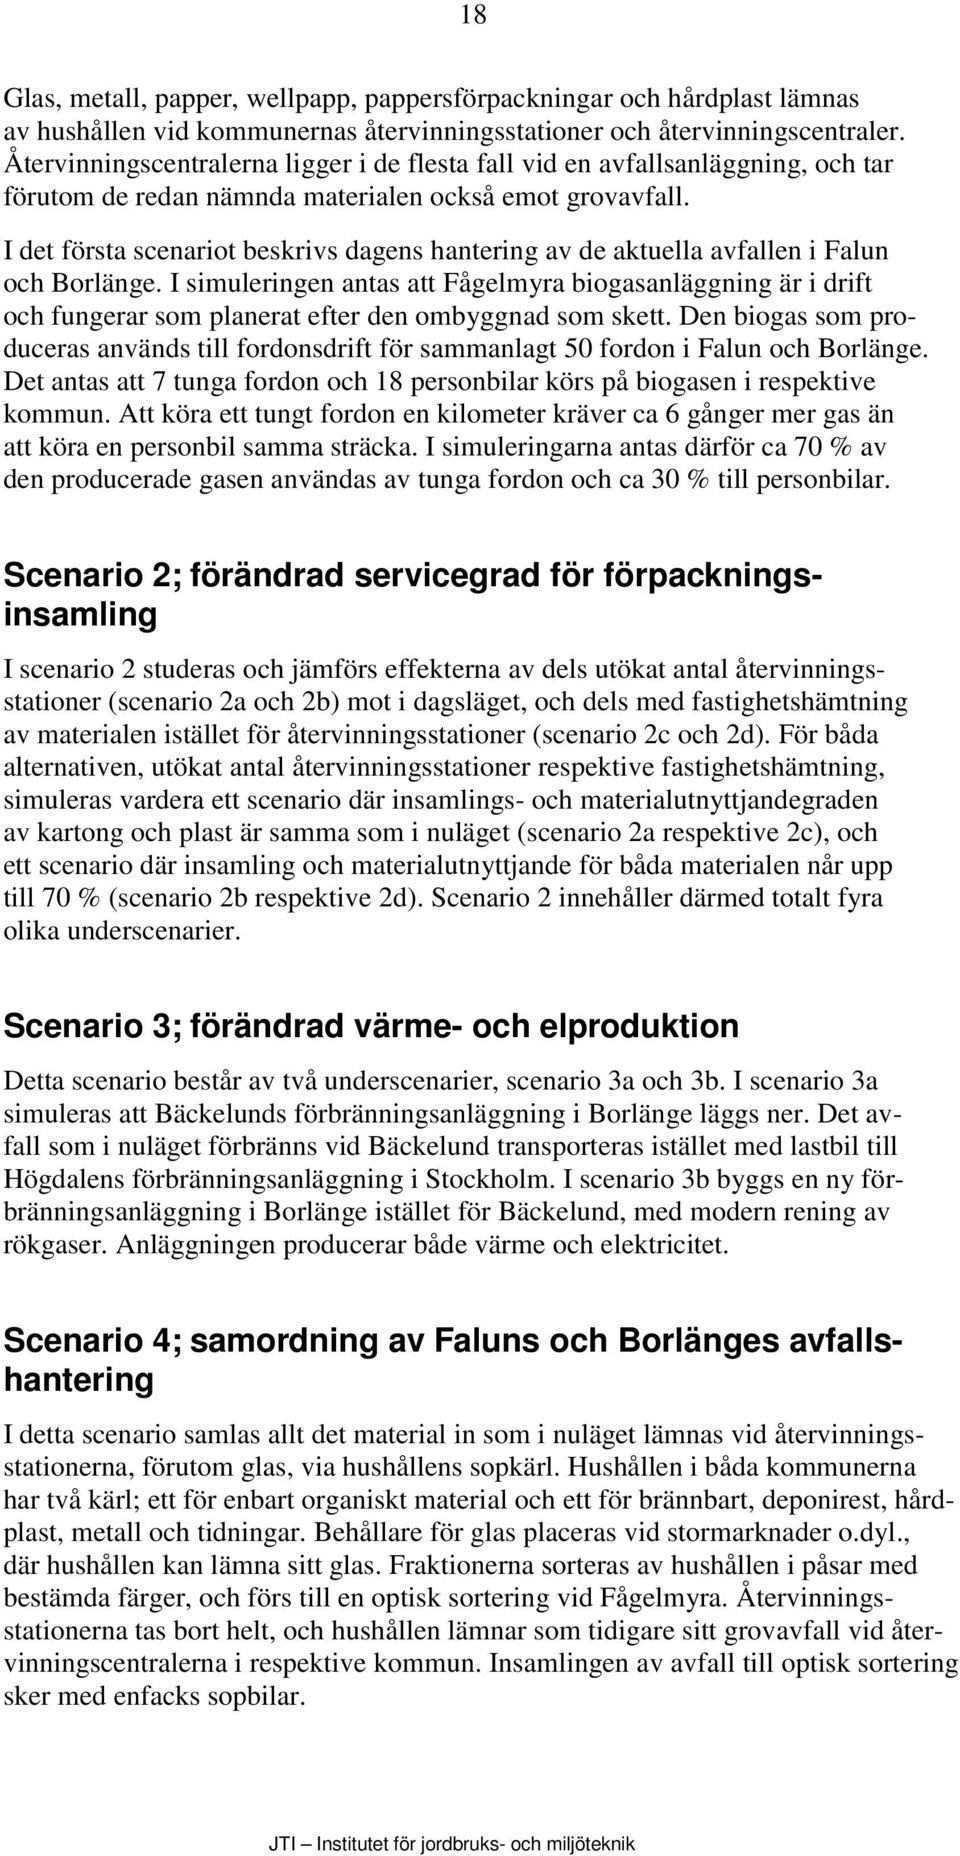 I det första scenariot beskrivs dagens hantering av de aktuella avfallen i Falun och Borlänge.